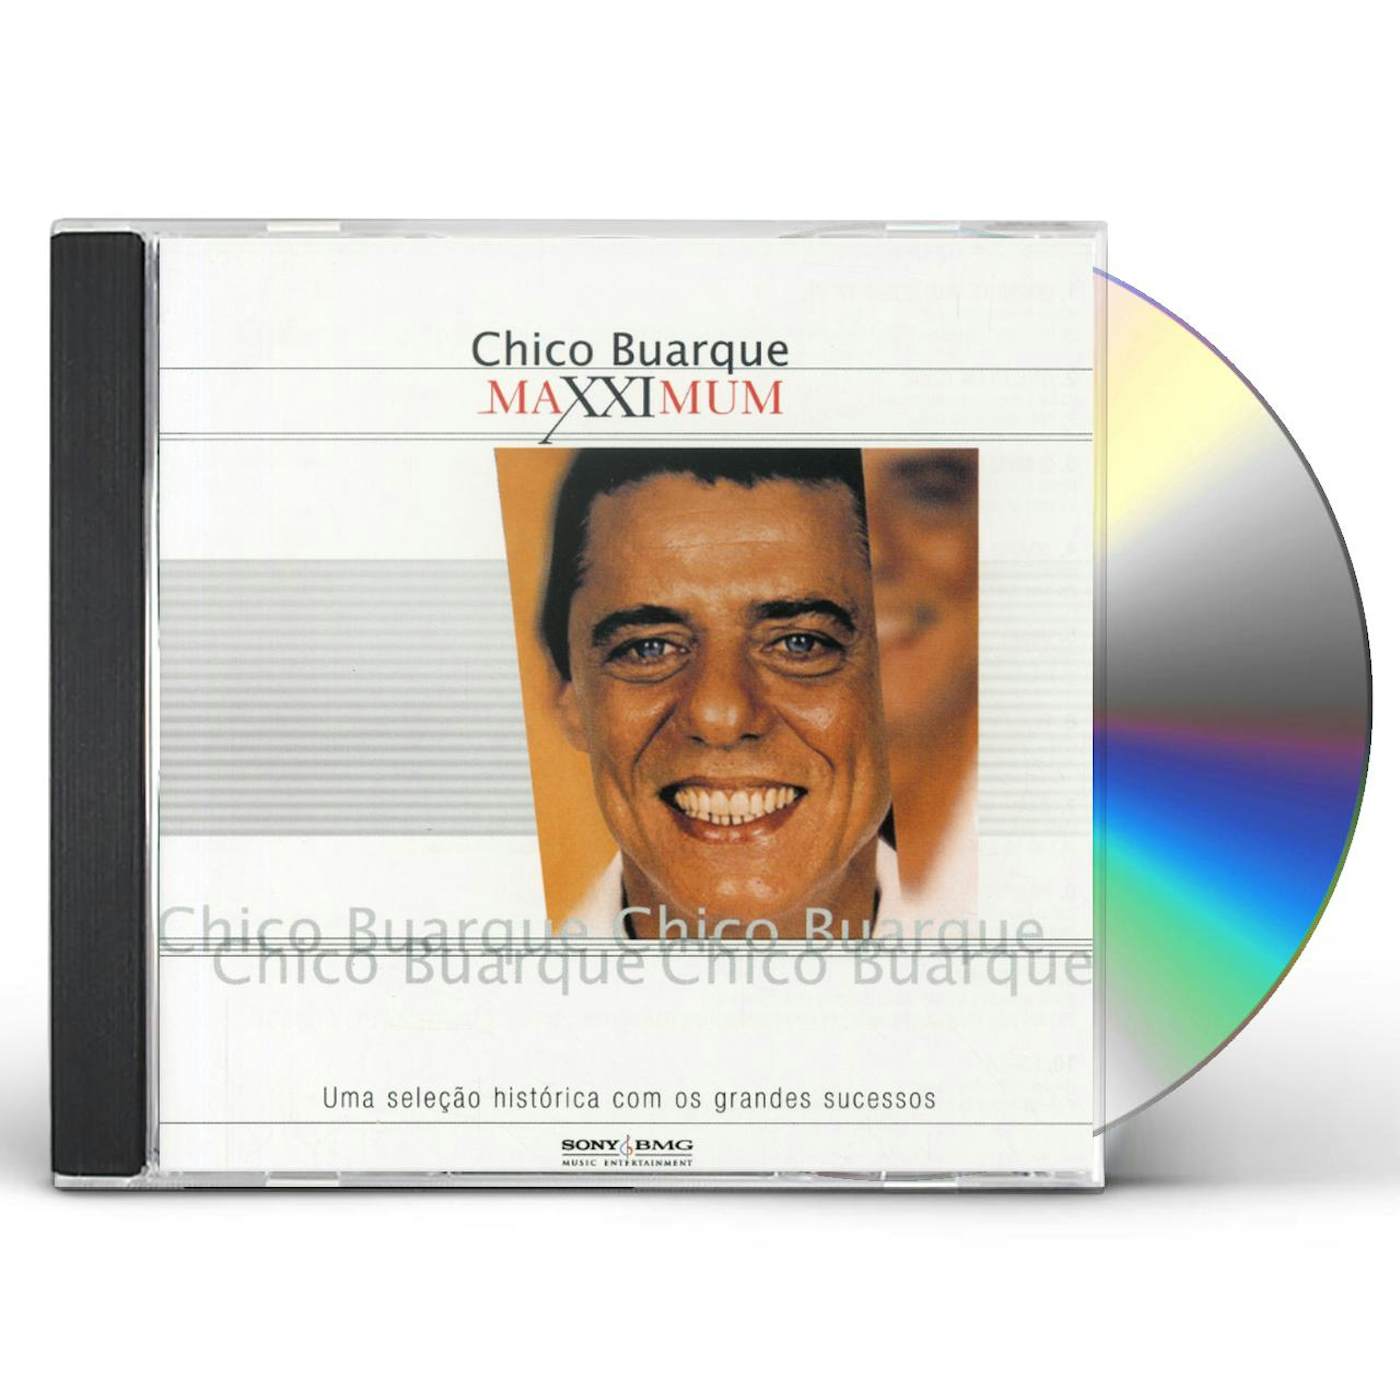 Chico Buarque MAXXIMUM CD